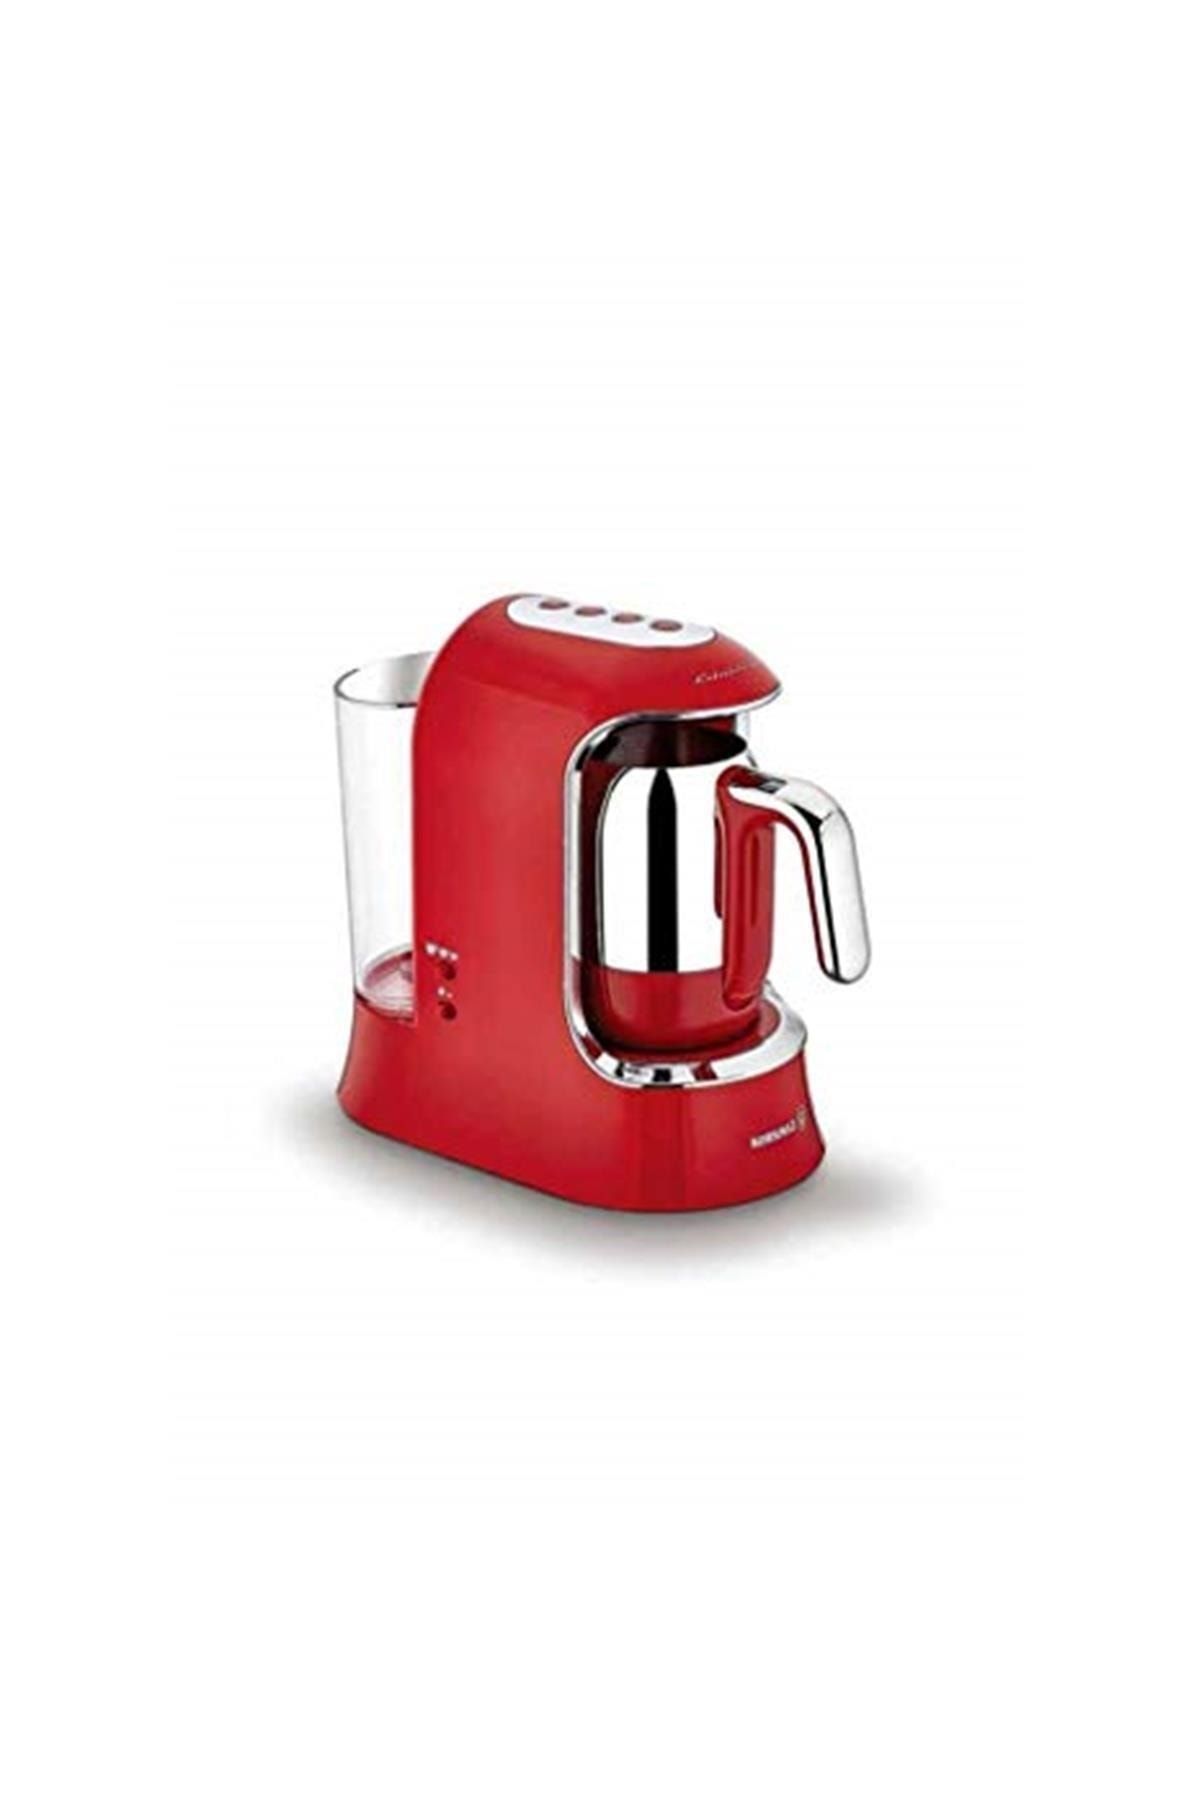 KORKMAZ A862 Kahvekolik Aqua Kahve Makinesi Kırmızı Krom